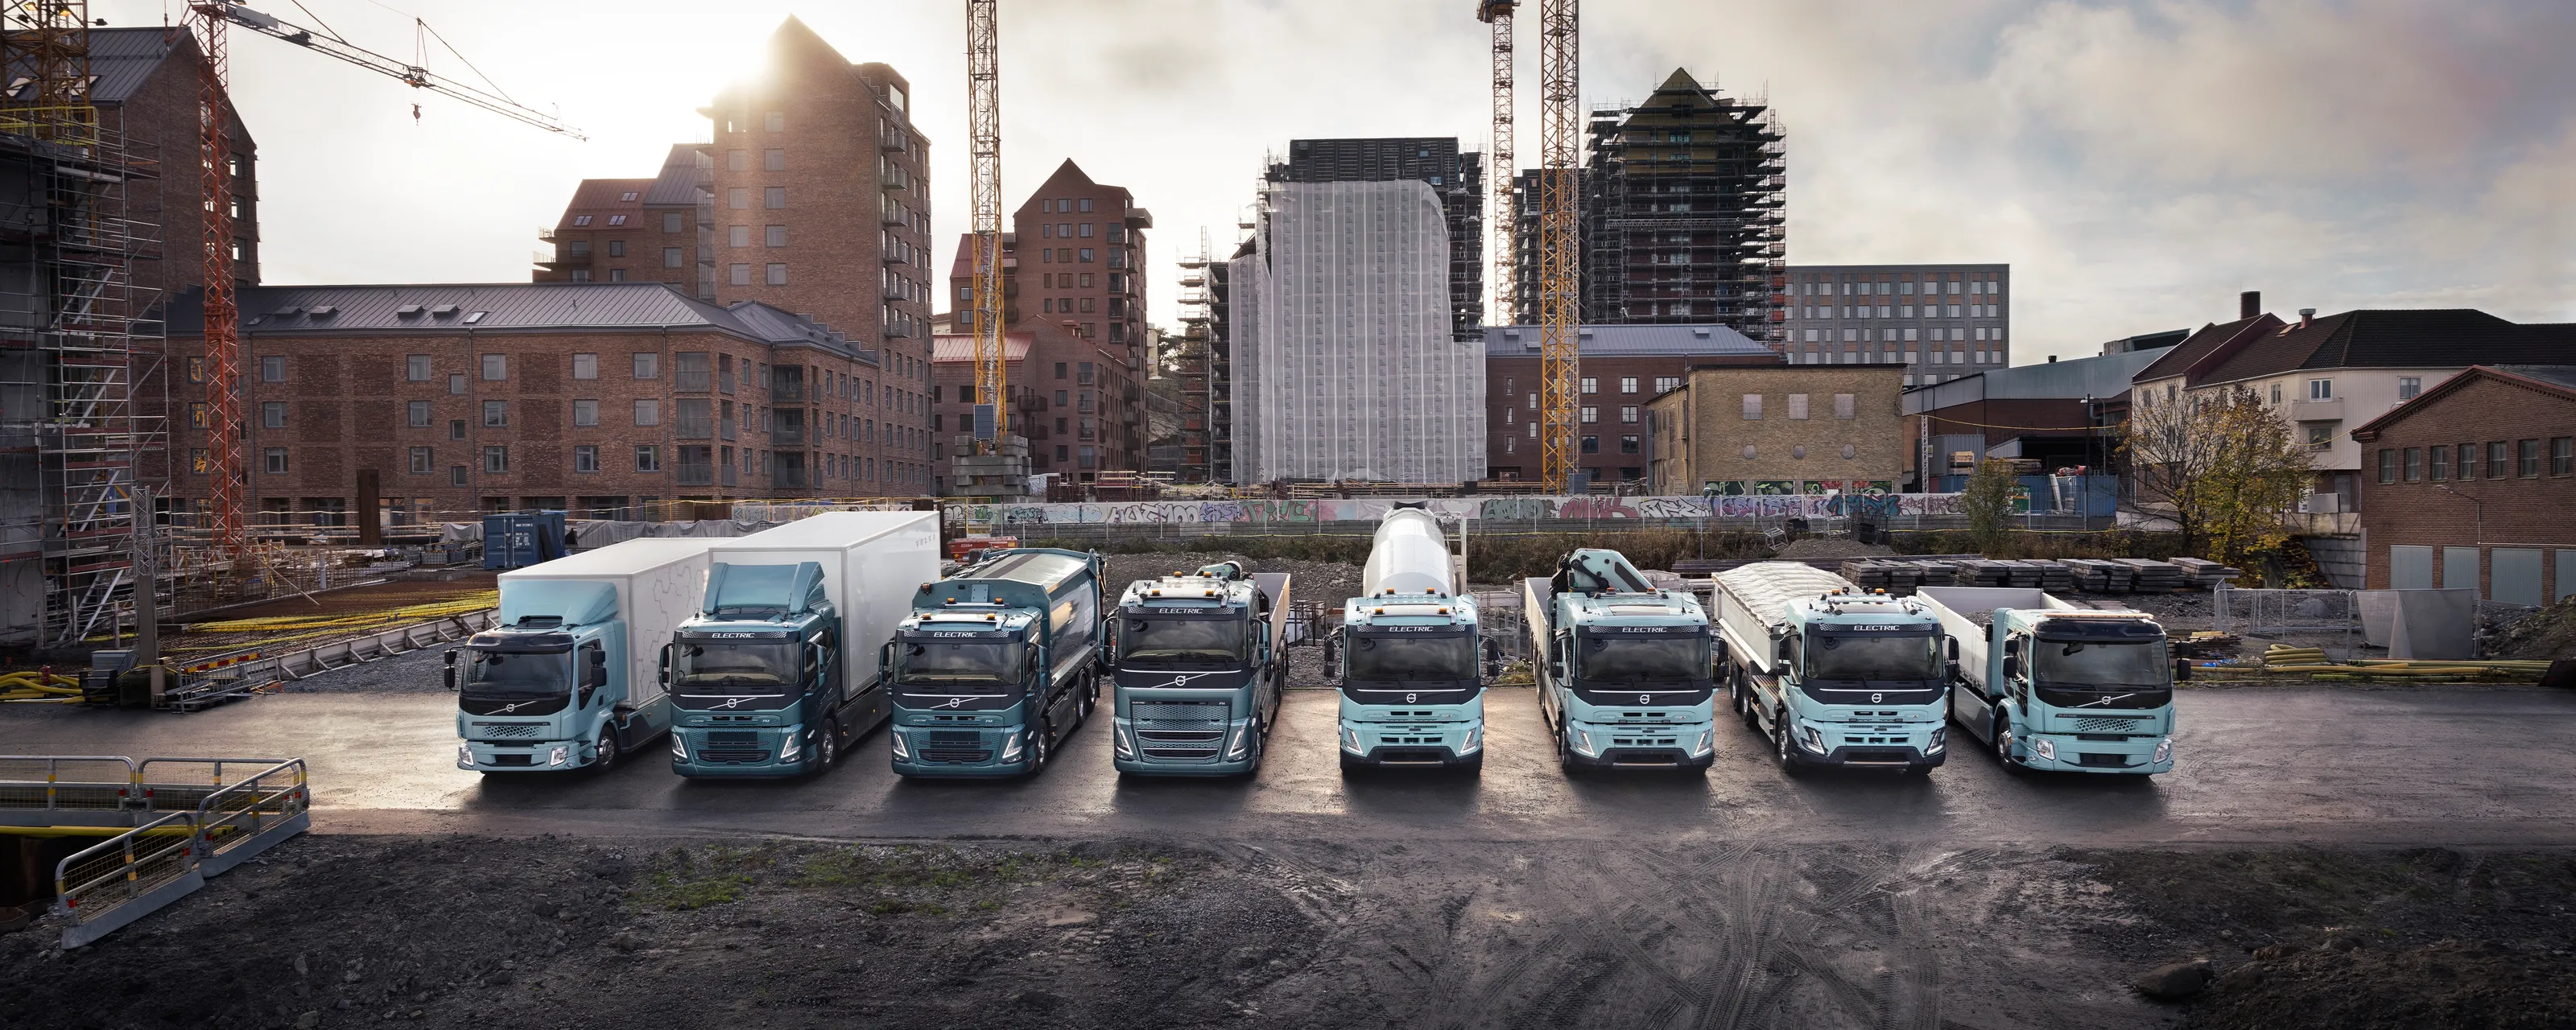 Åtte ulike elektriske lastebiler står på rekke, oppstilt foran heisekran og urbant miljø